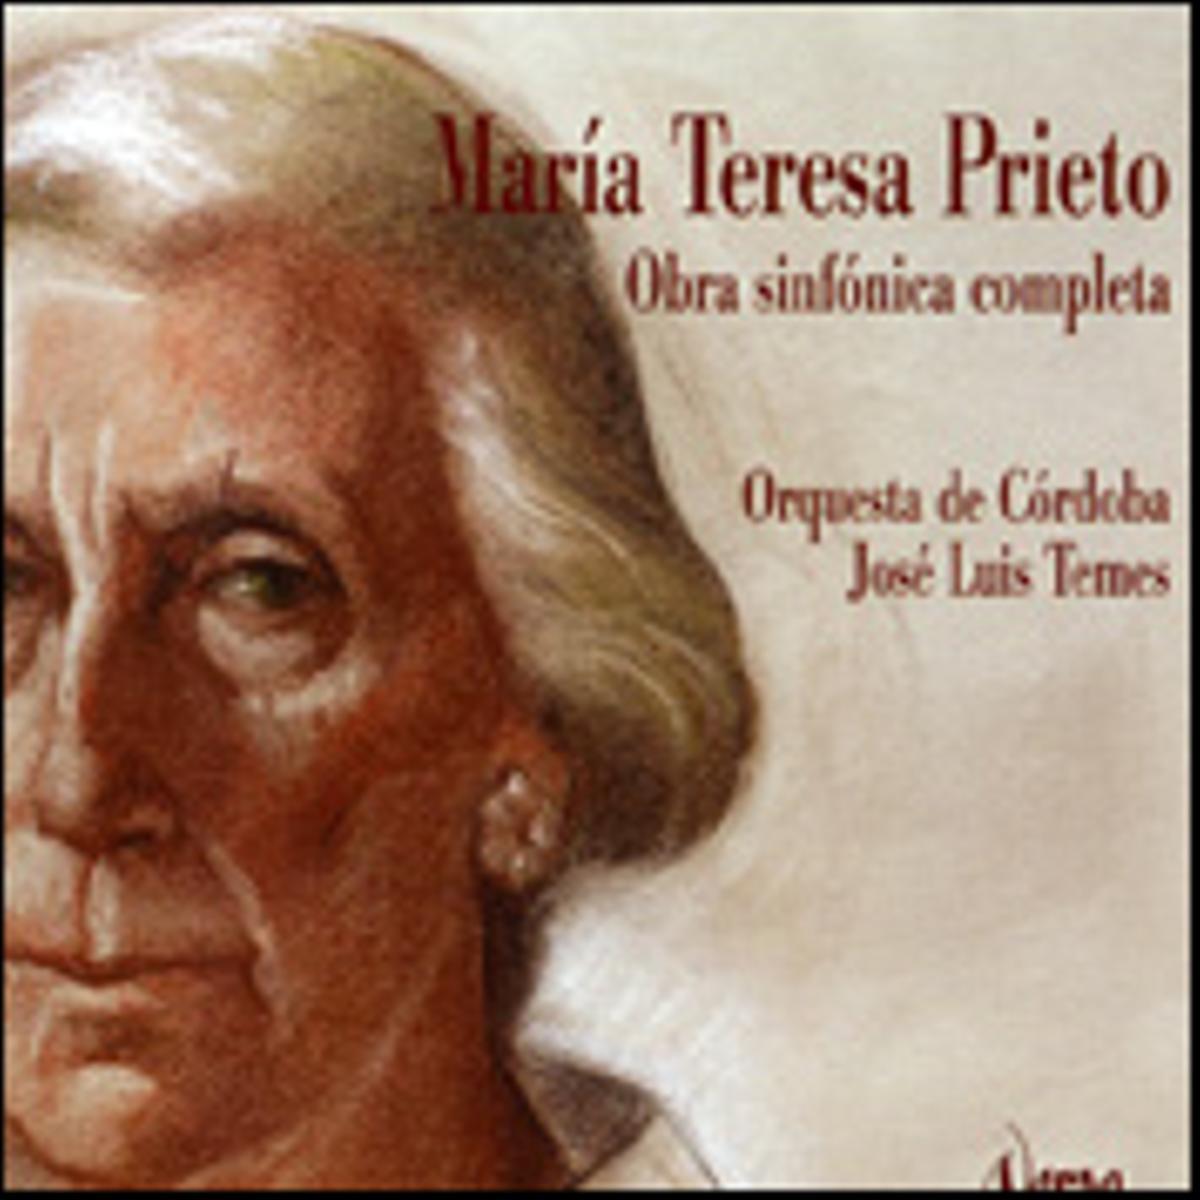 Uno de los discos de María Teresa Prieto